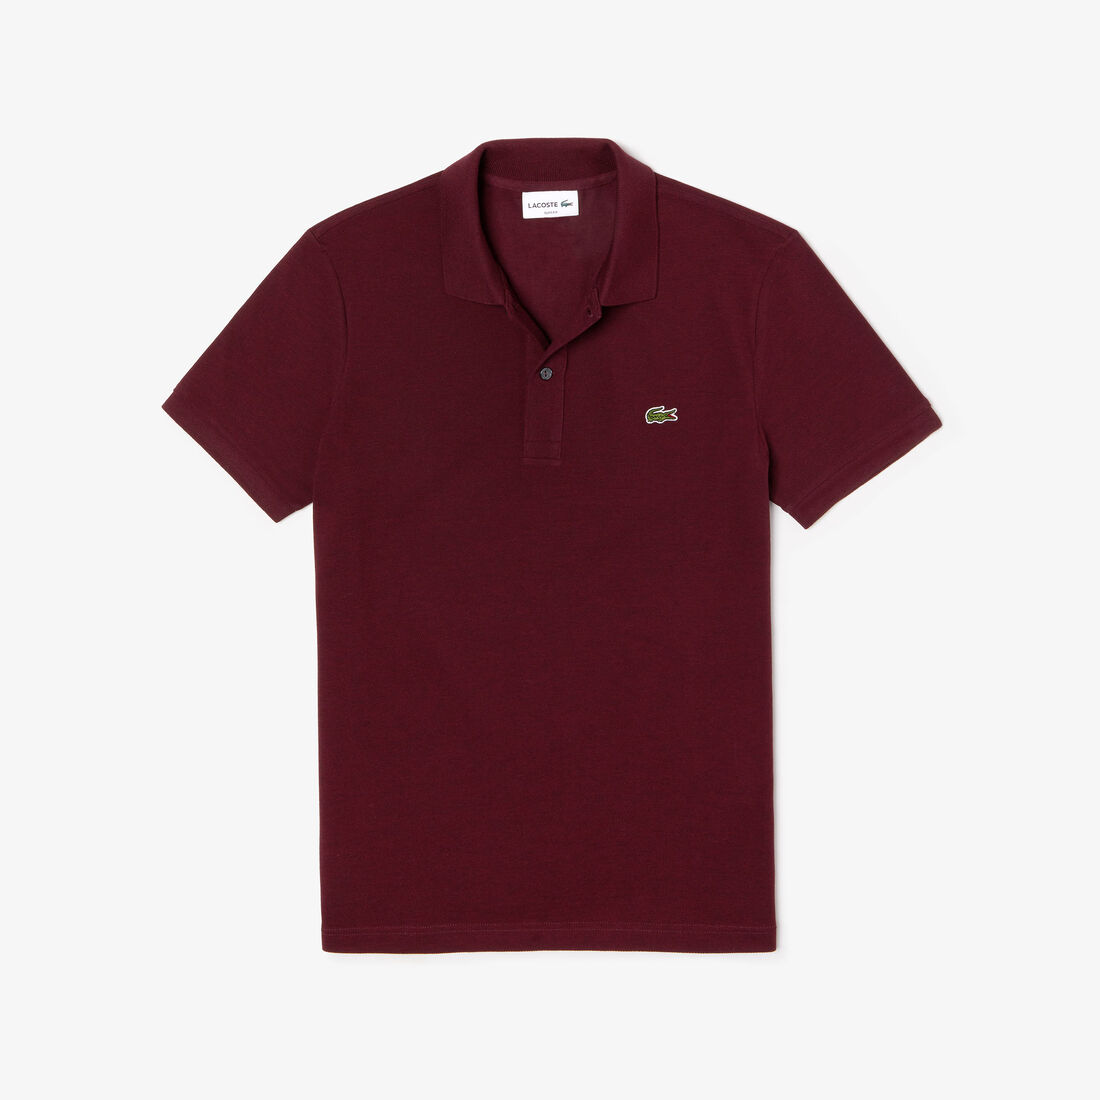 Lacoste Slim Fit In Petit Piqué Polo Shirts Herren Bordeaux | VTZX-39485